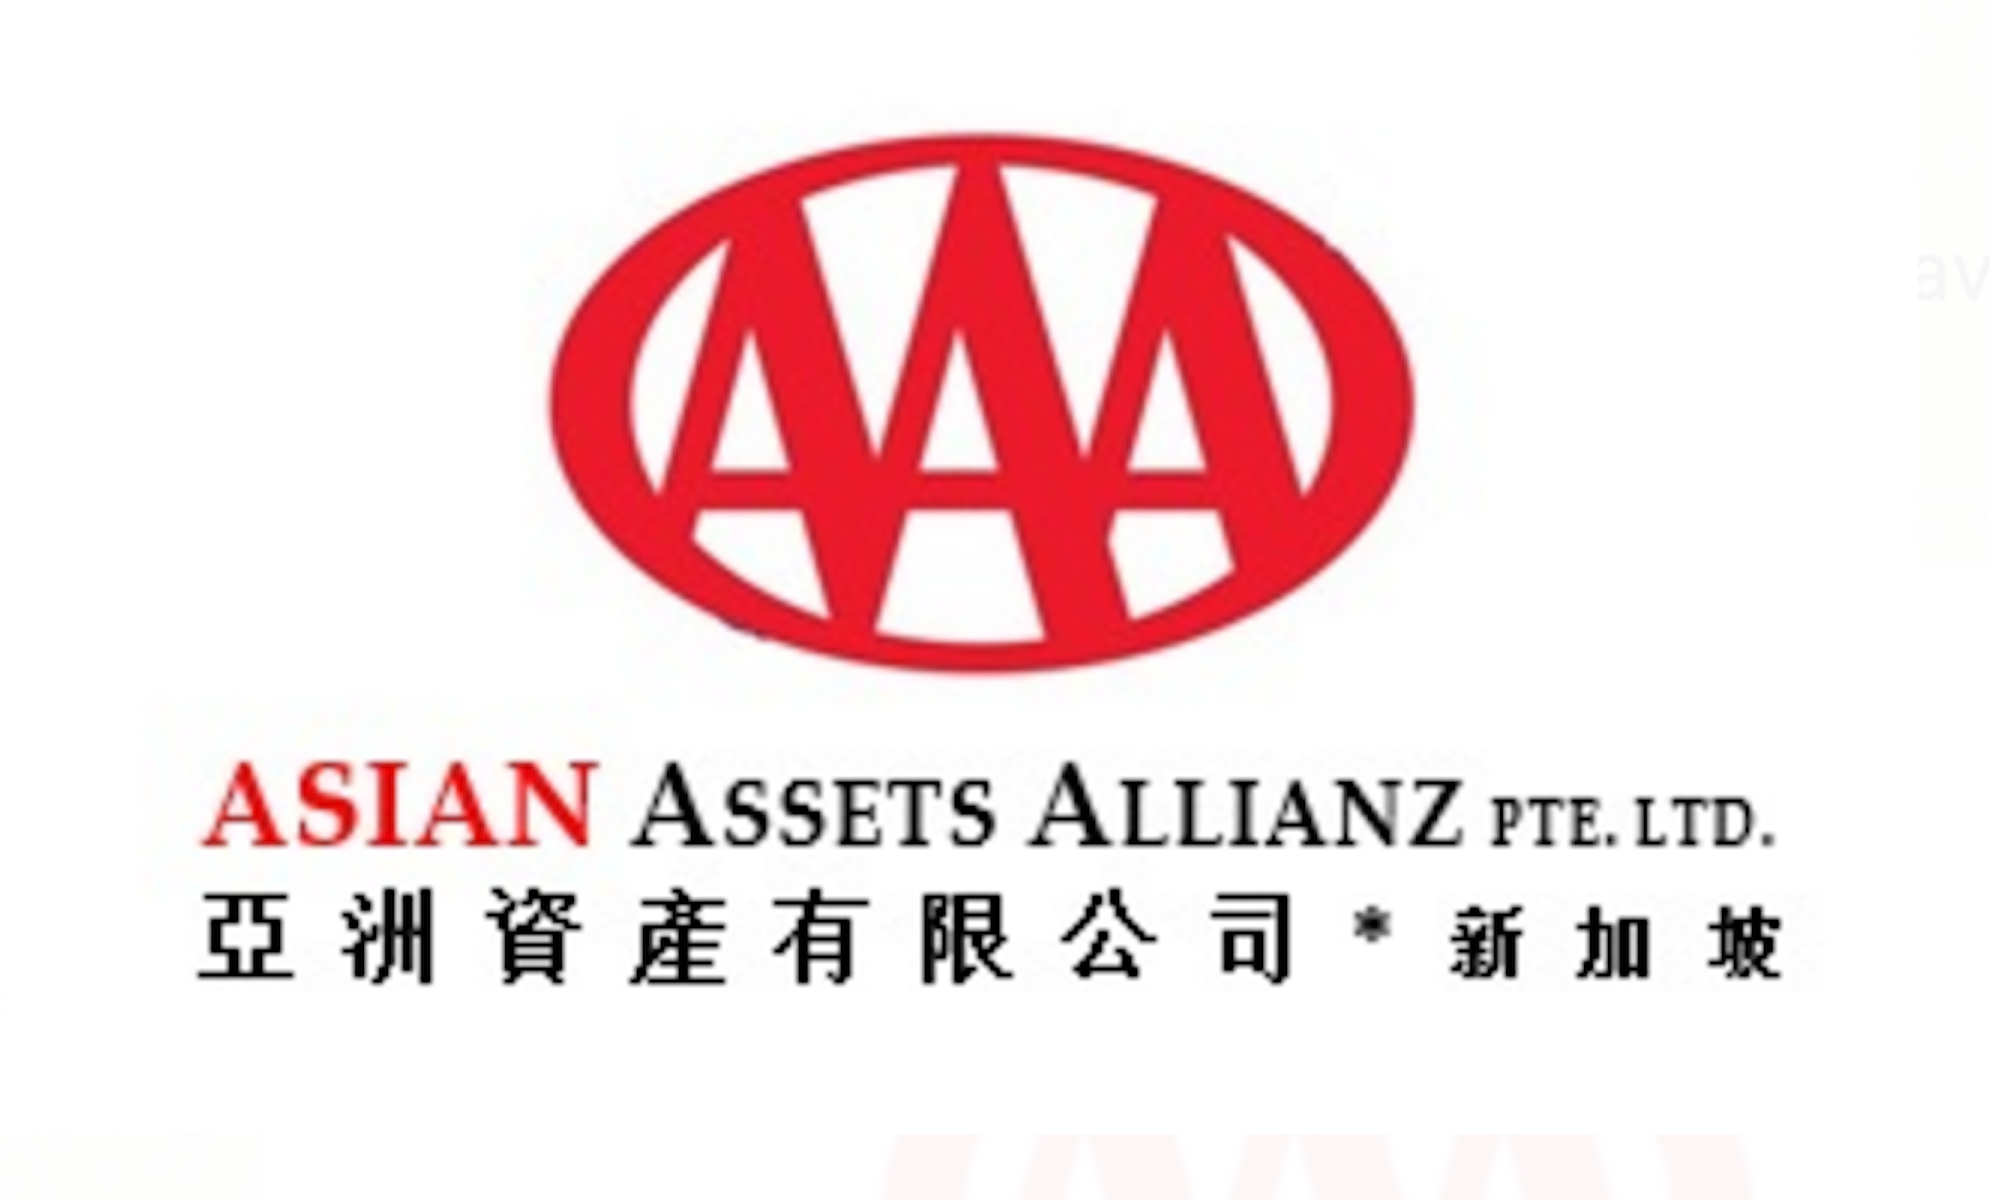 Asian Assets Allianz